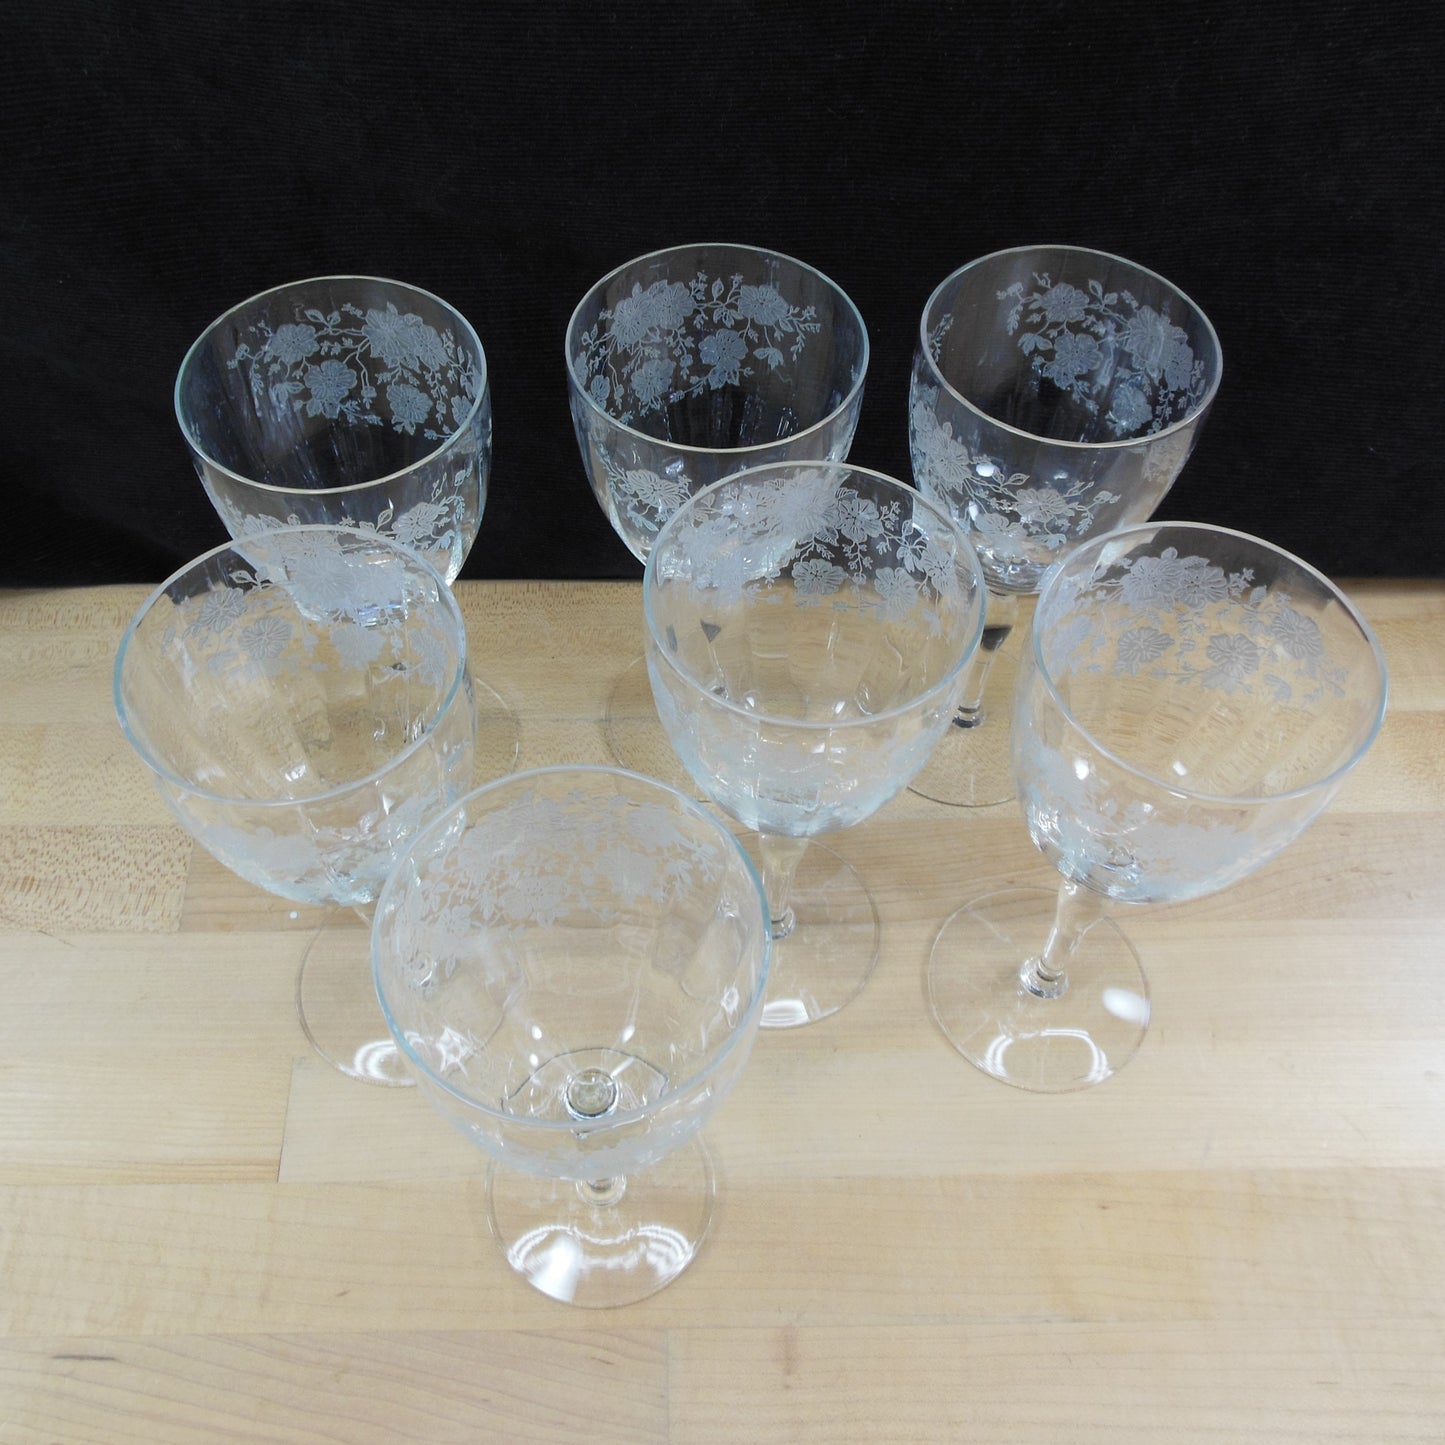 Unknown Maker UNK2629 Elegant Floral Etched Crystal Water Glass Goblet - 7 Set Vintage Antique